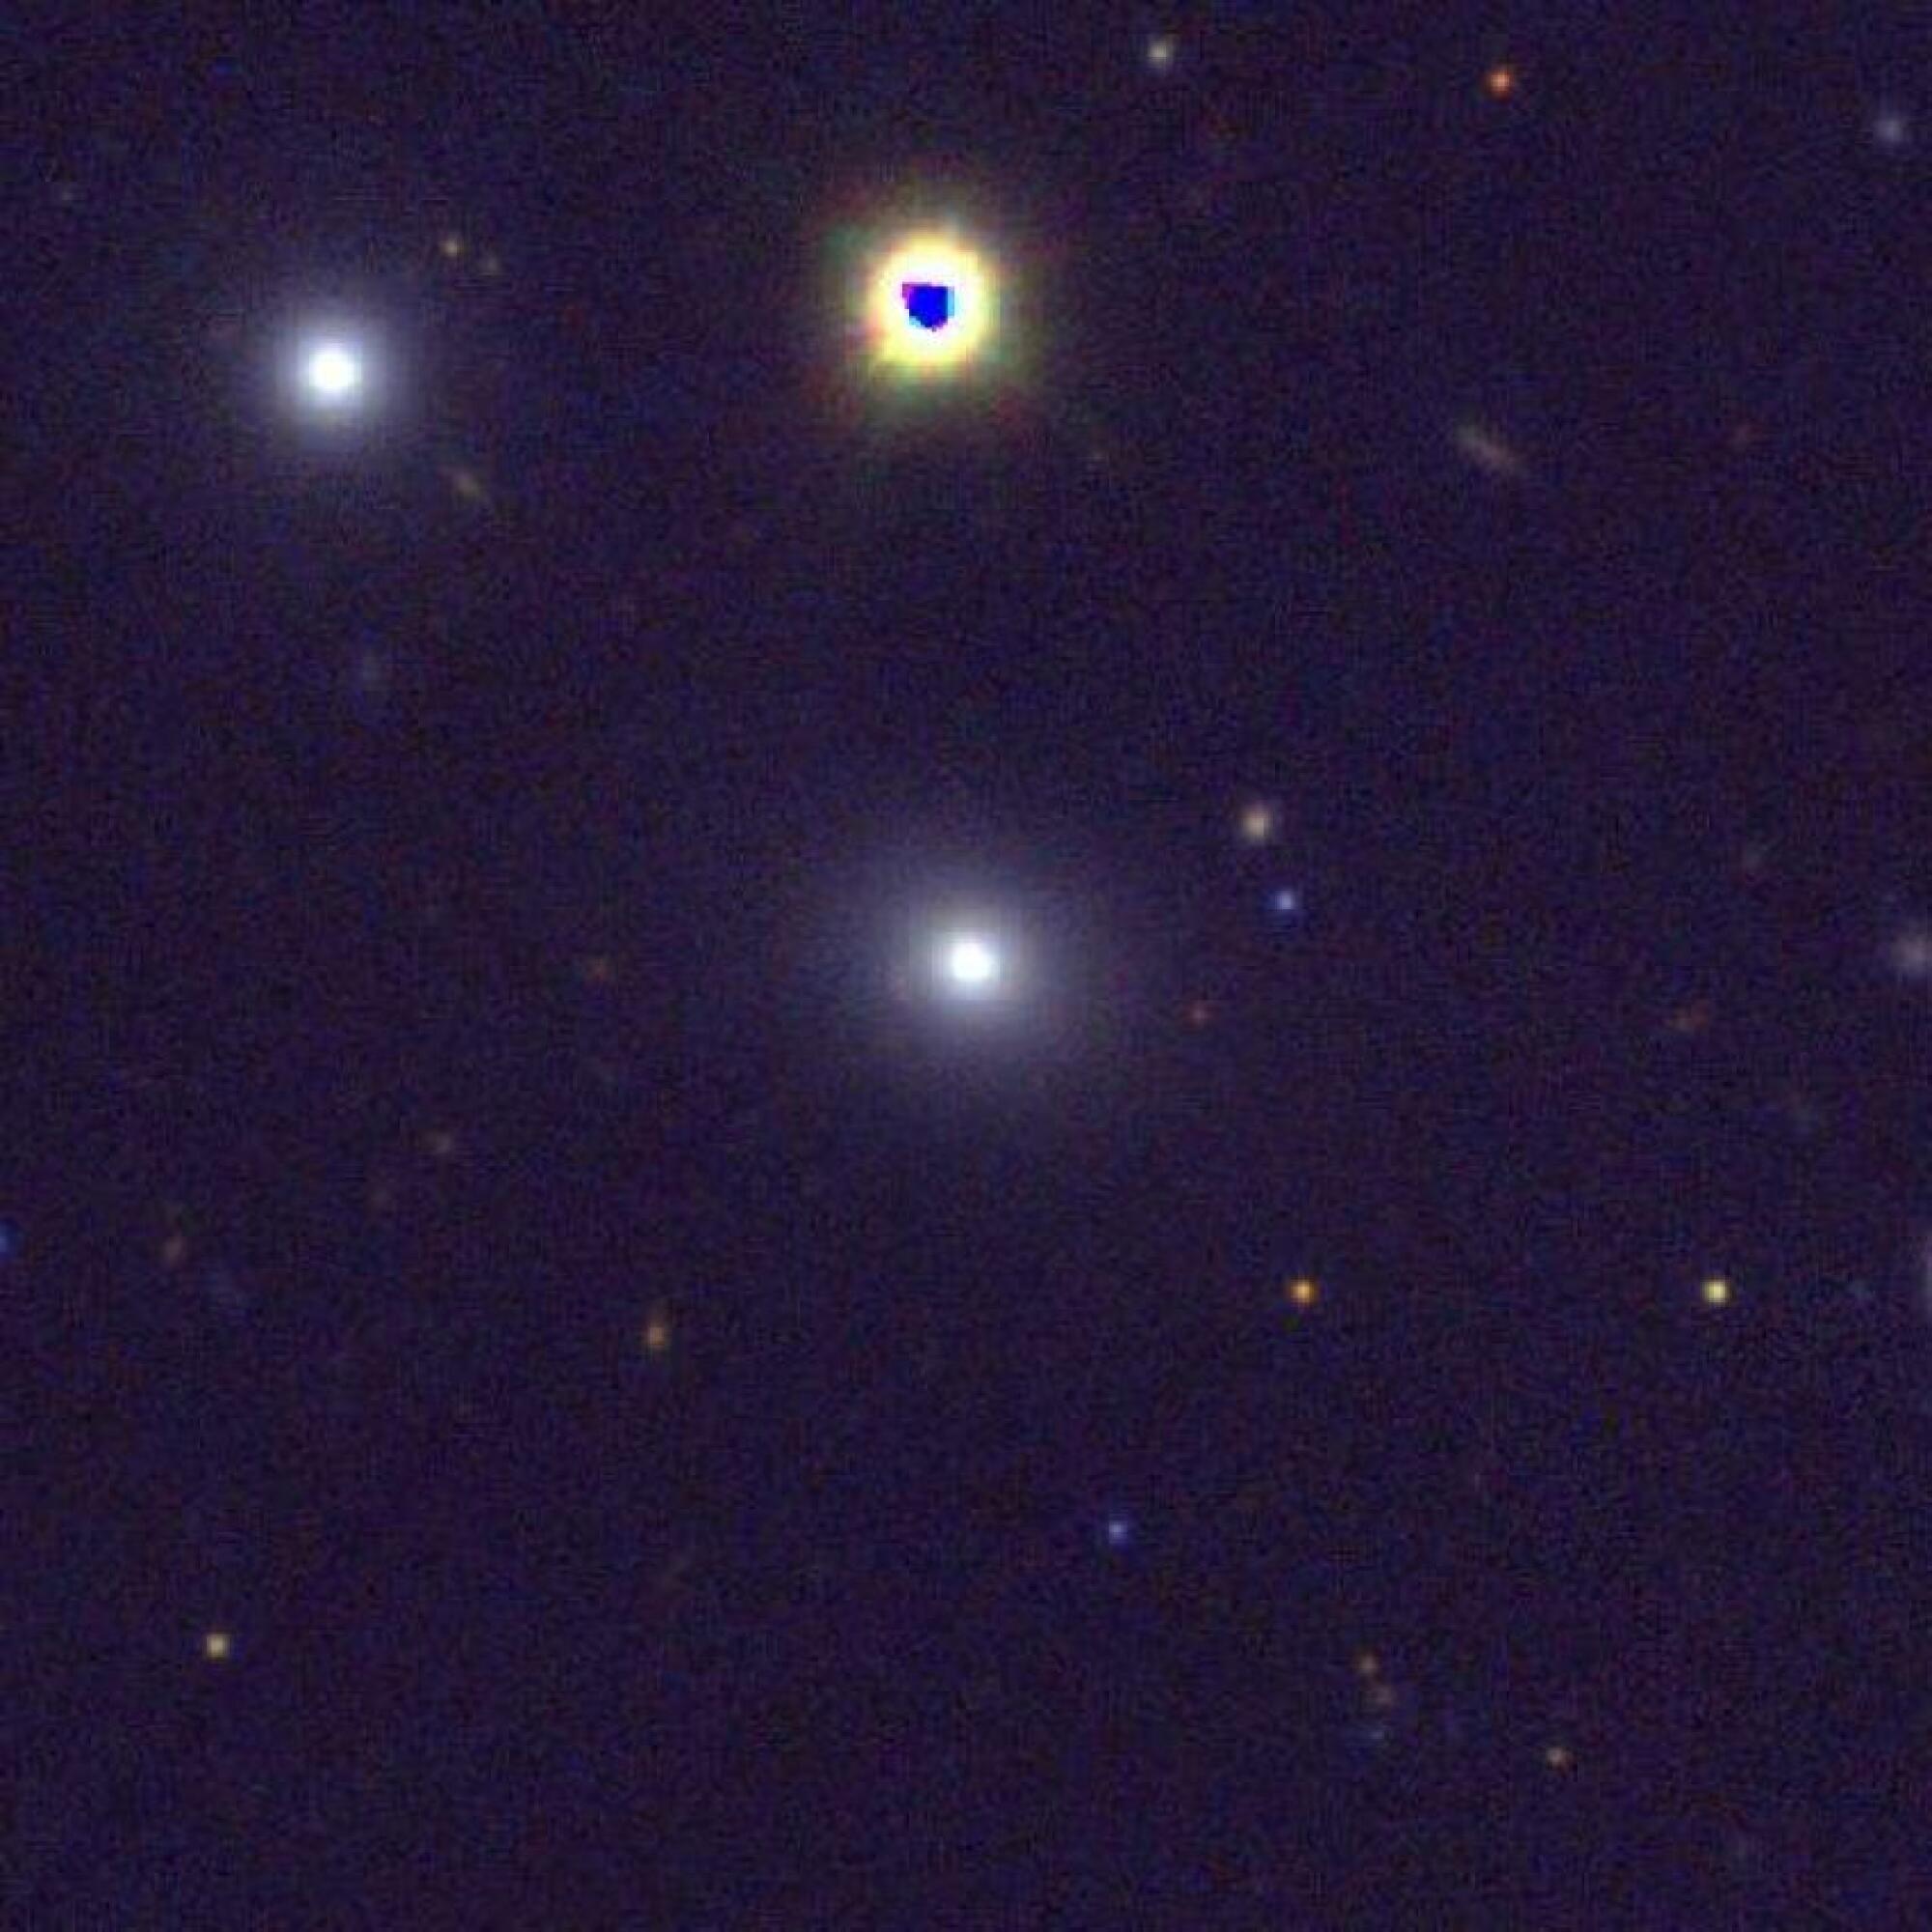 La galaxie PBC J2333.9-2343 est la tache lumineuse au centre de cette image.